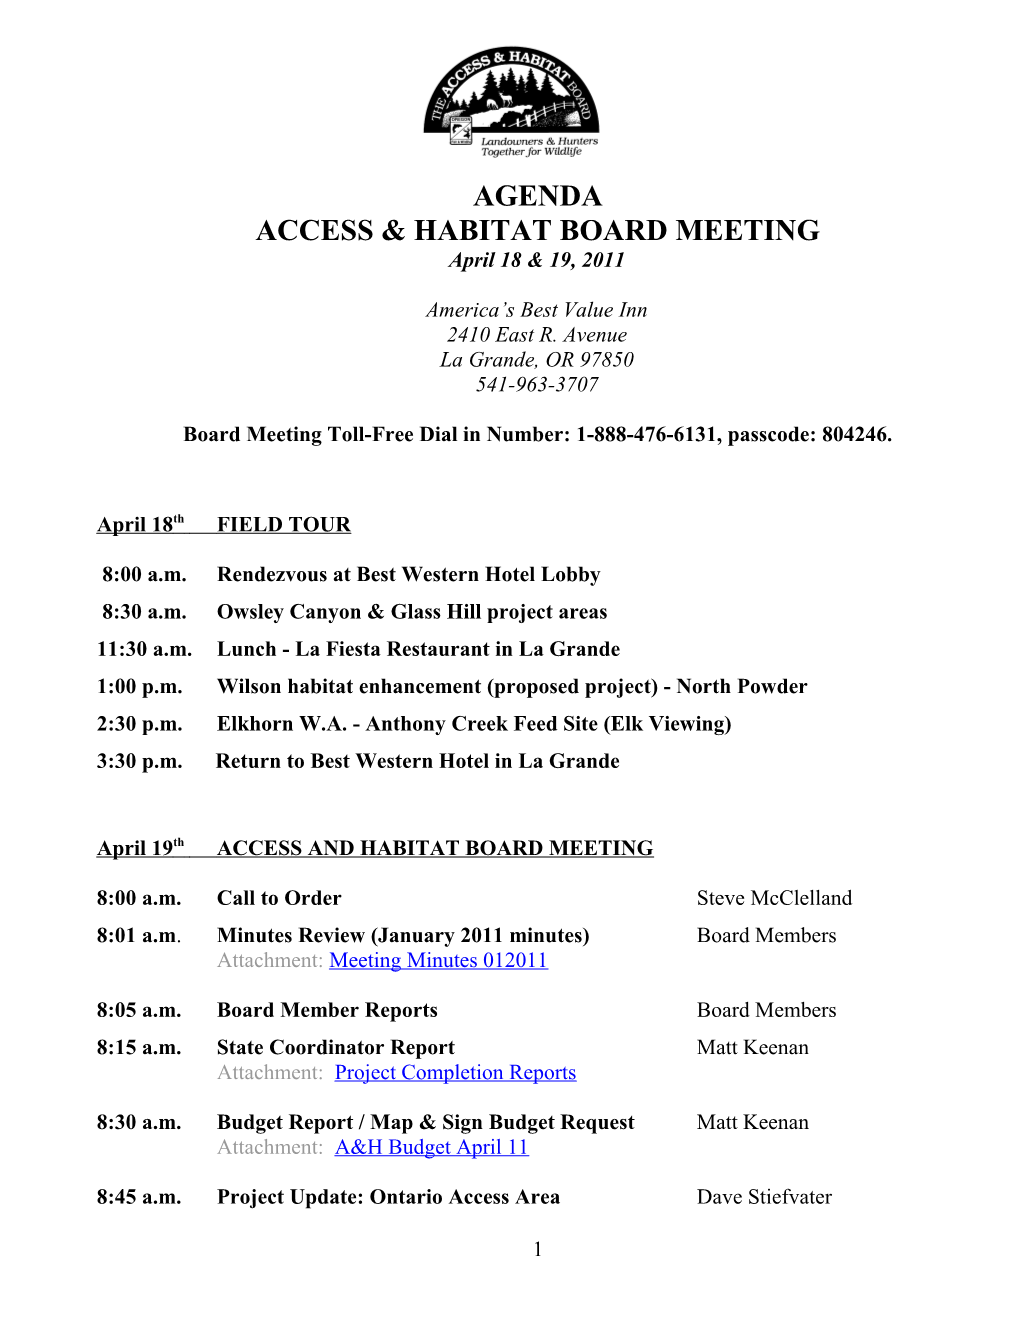 Access & Habitat Board Meeting